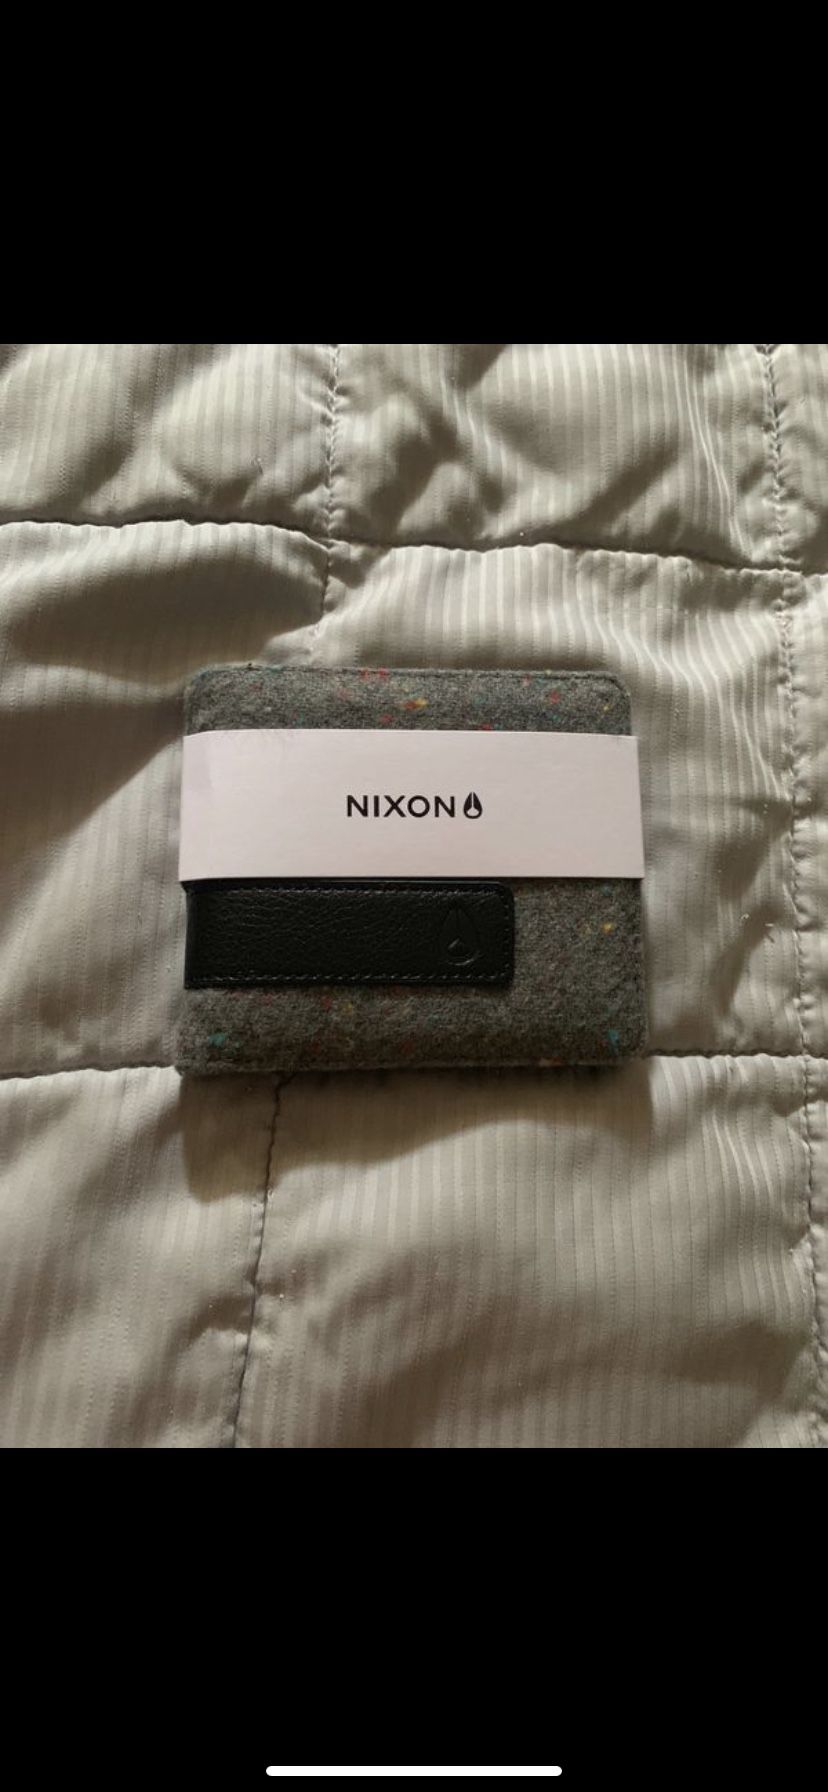 Nixon wallet